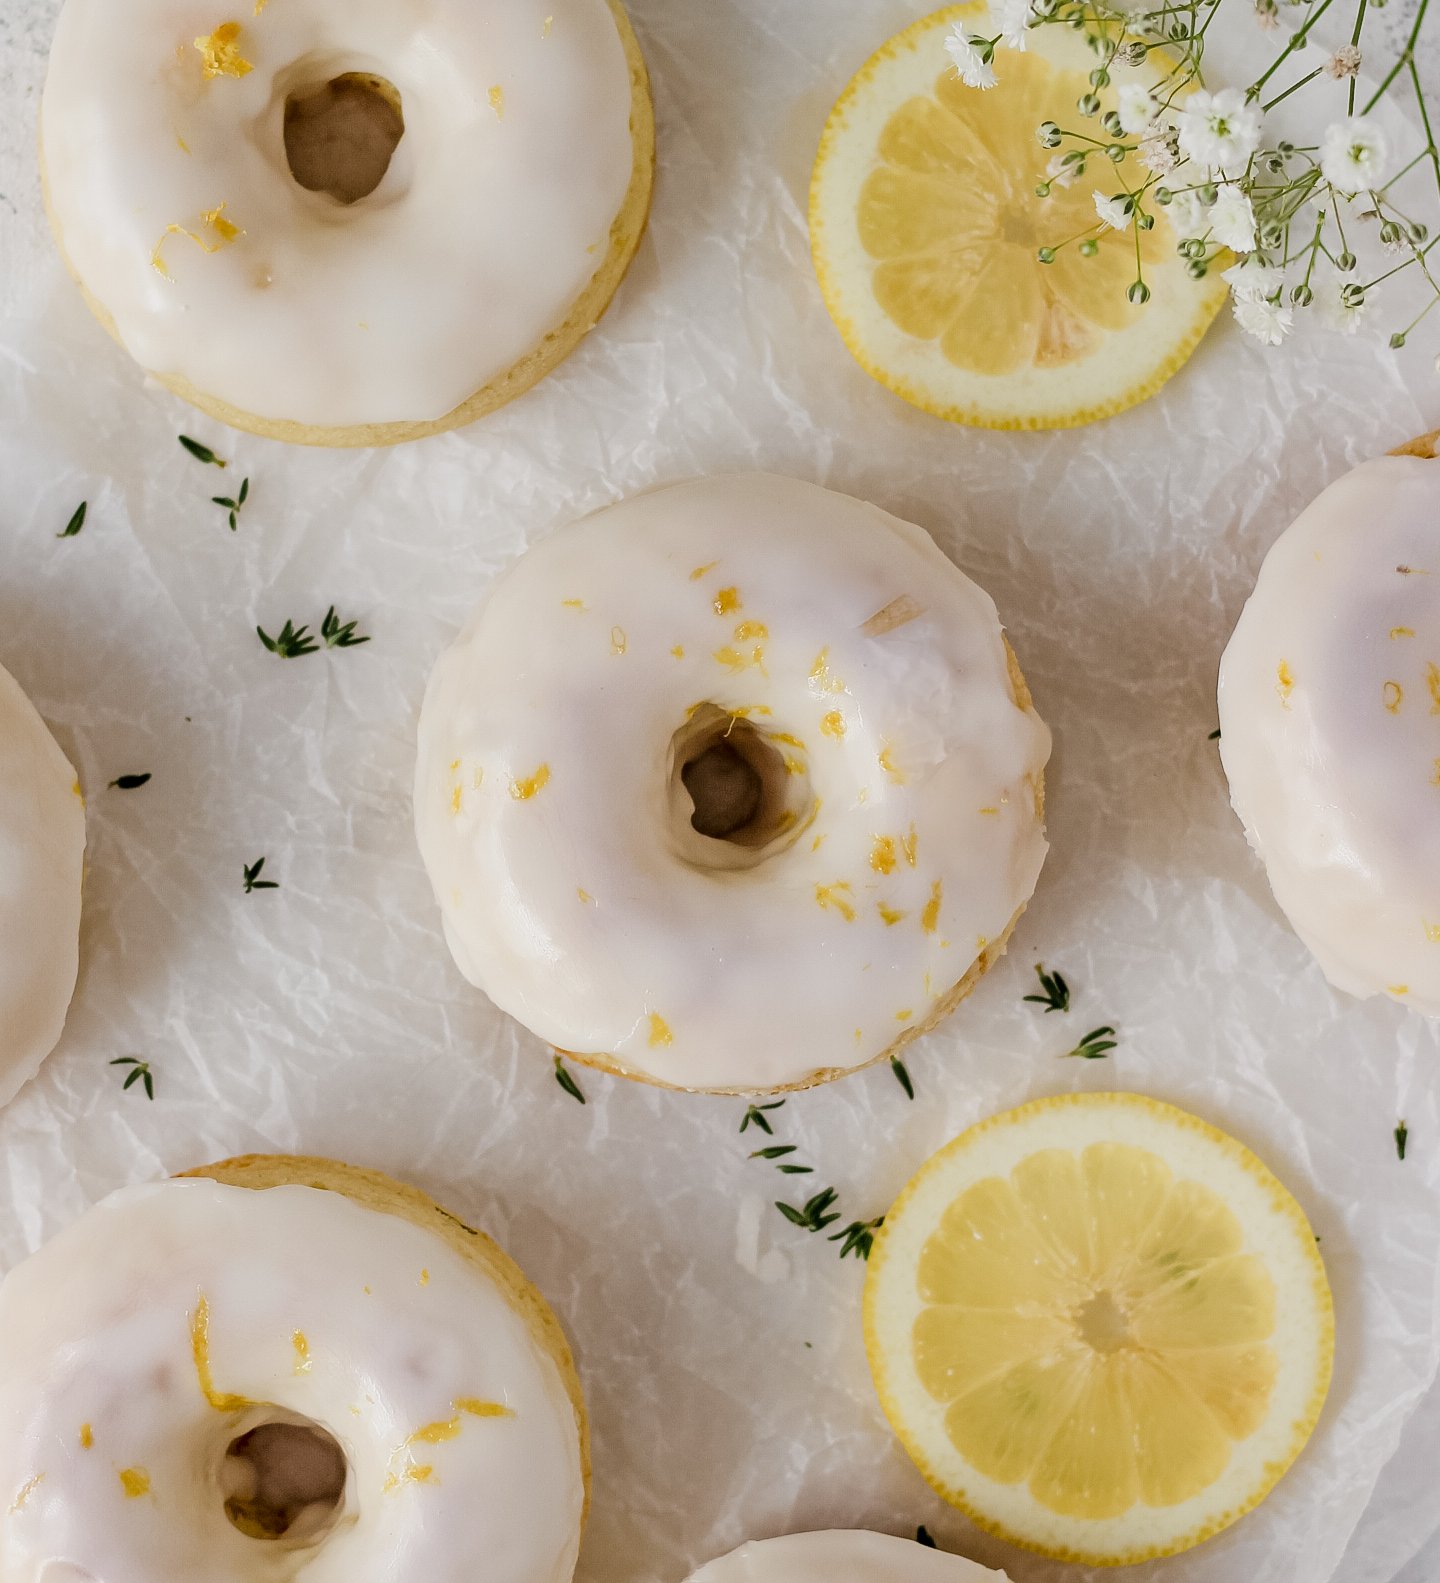 Baked Glazed Doughnuts - Jar Of Lemons